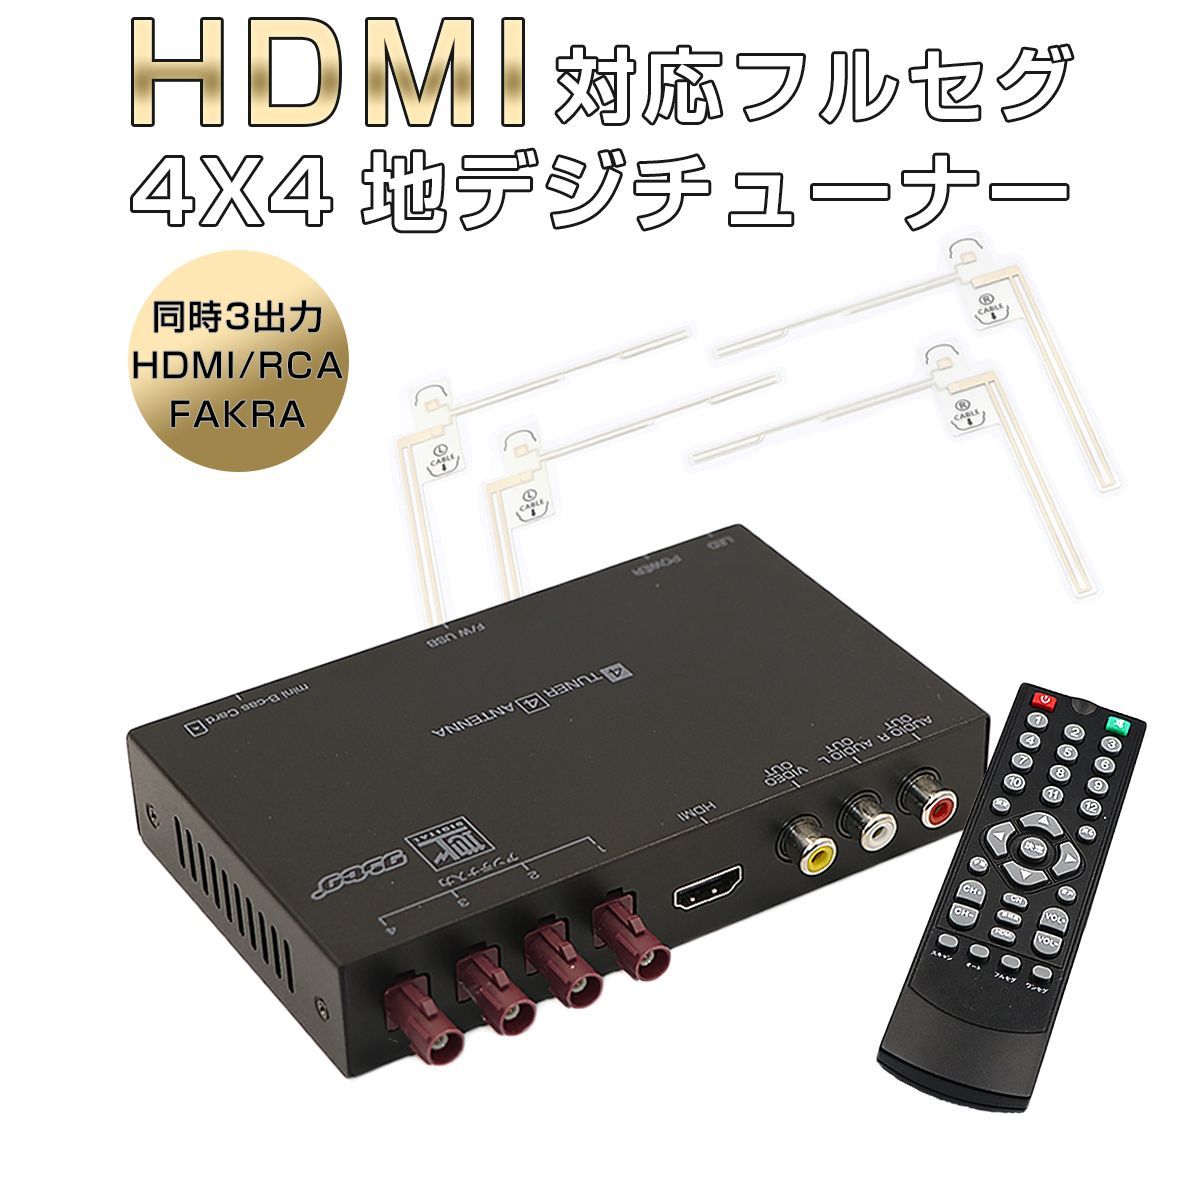 保管★地デジチューナー 4×4 フルセグ ワンセグ 自動切換 HDMI EPG フルセグチューナー フィルムアンテナ4個 12V24V DT4100 その他